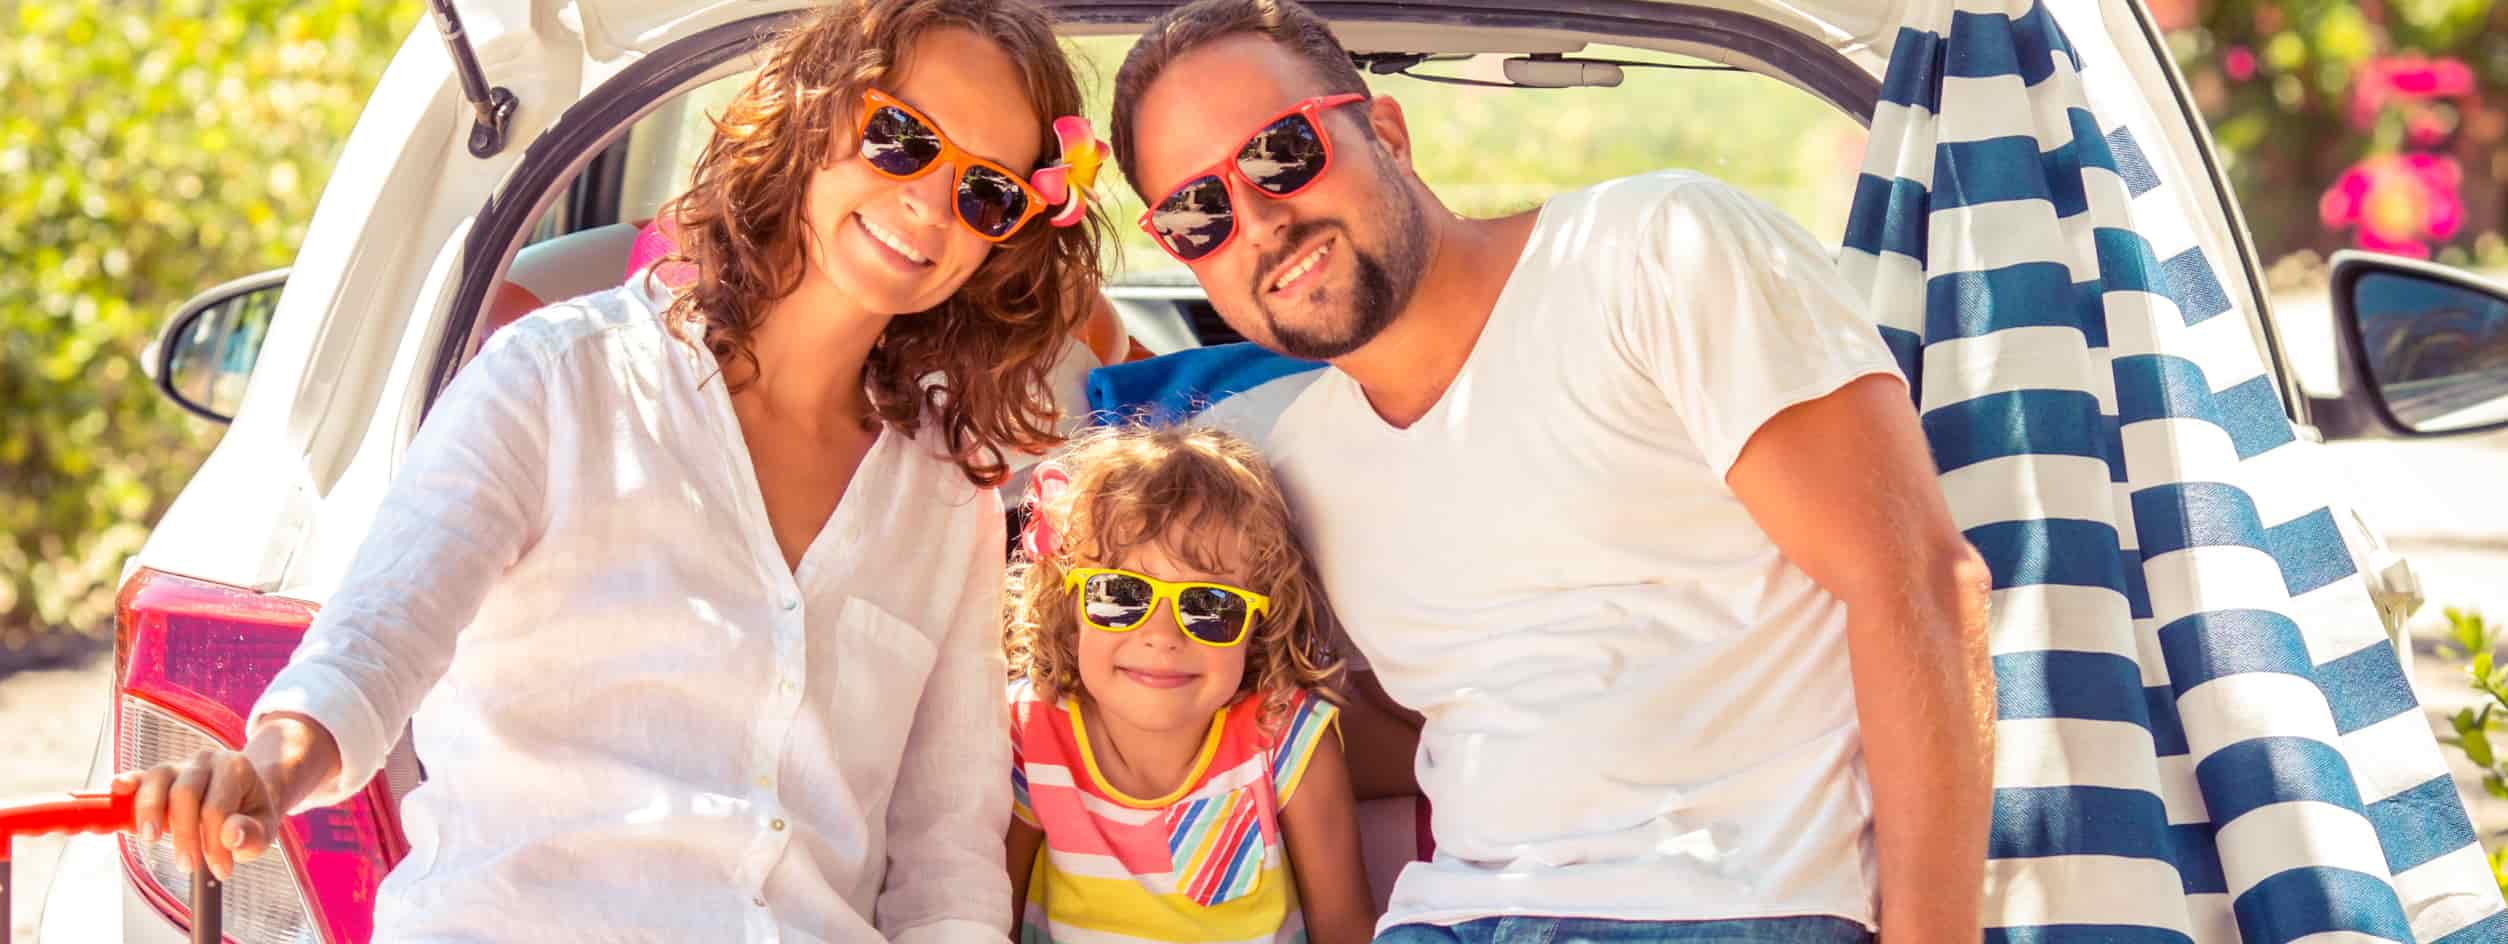 famille qui veut préparer sa voiture pour l'été avant les vacances 2017